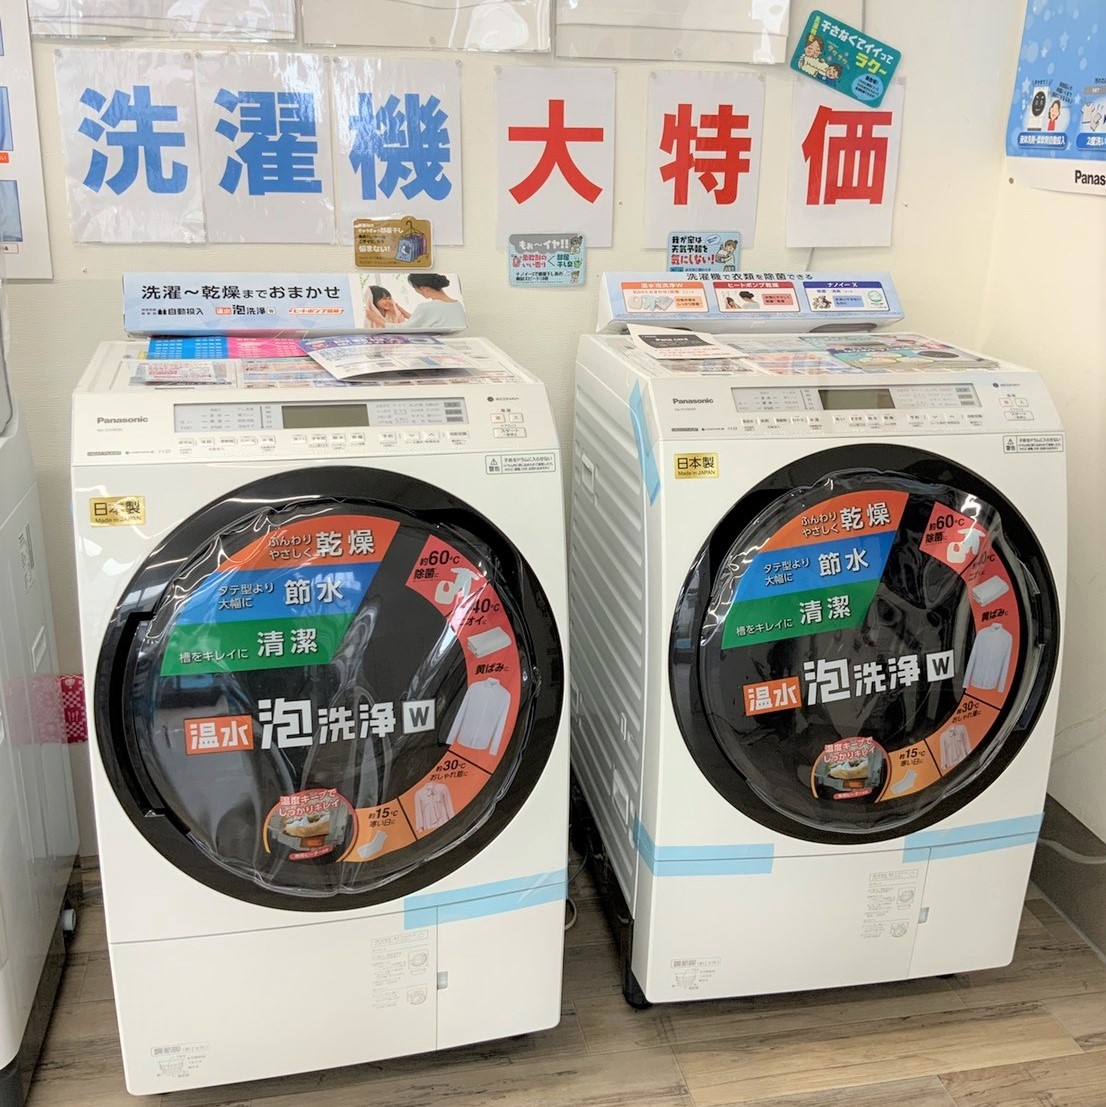 パナソニック ドラム式洗濯機の在庫あります！ – 熊谷市の街のでんきや 